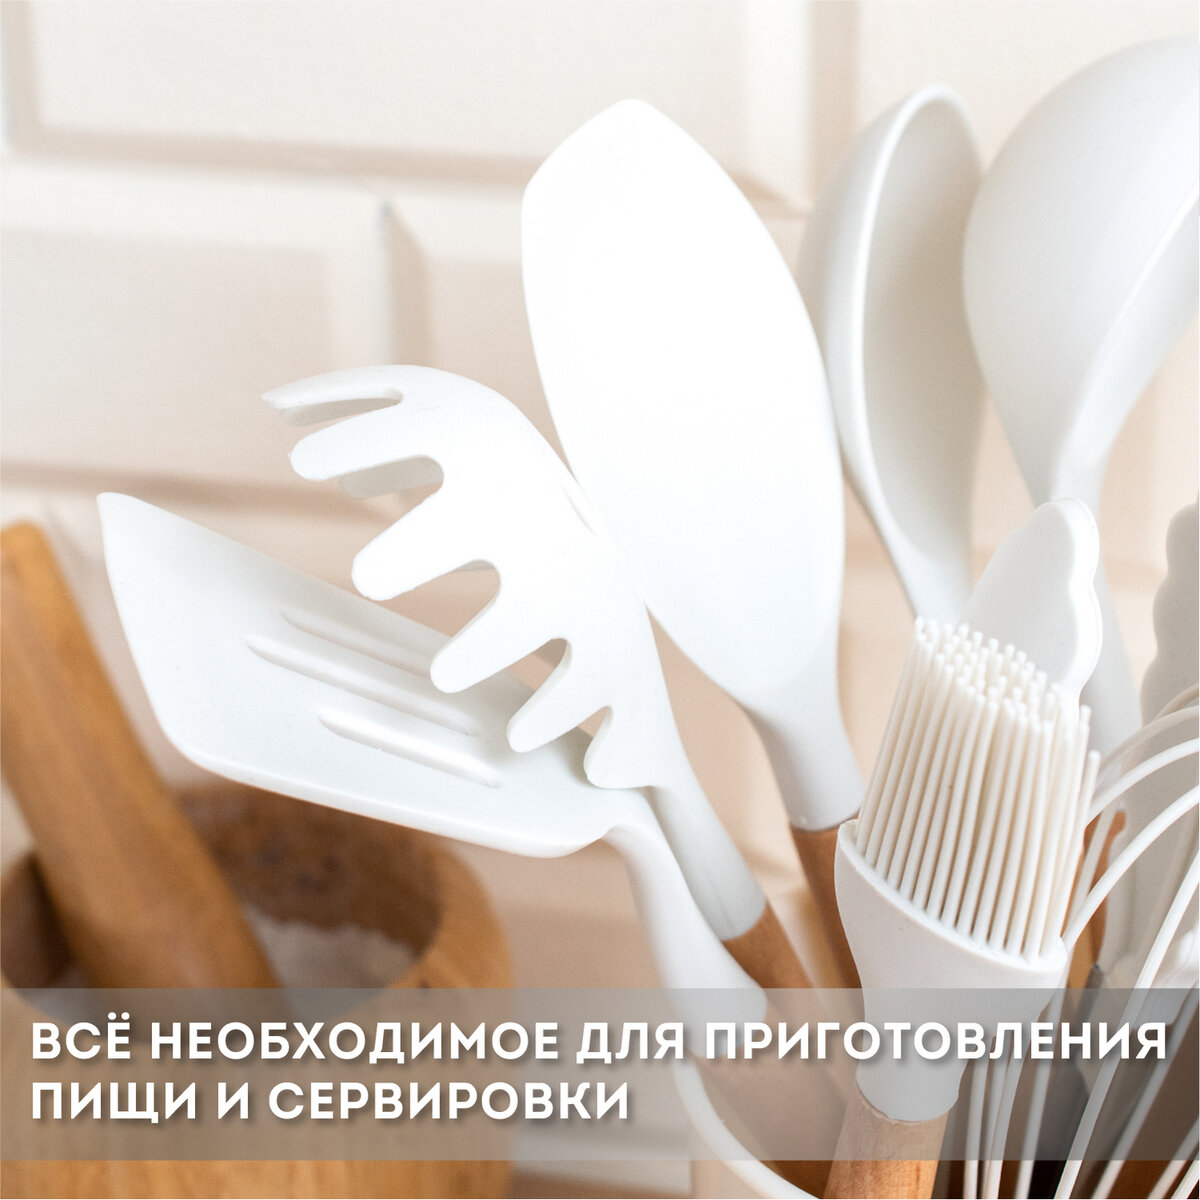 Набор кухонных принадлежностей DASWERK силиконовые с деревянными ручками 12 в 1 - фото 8